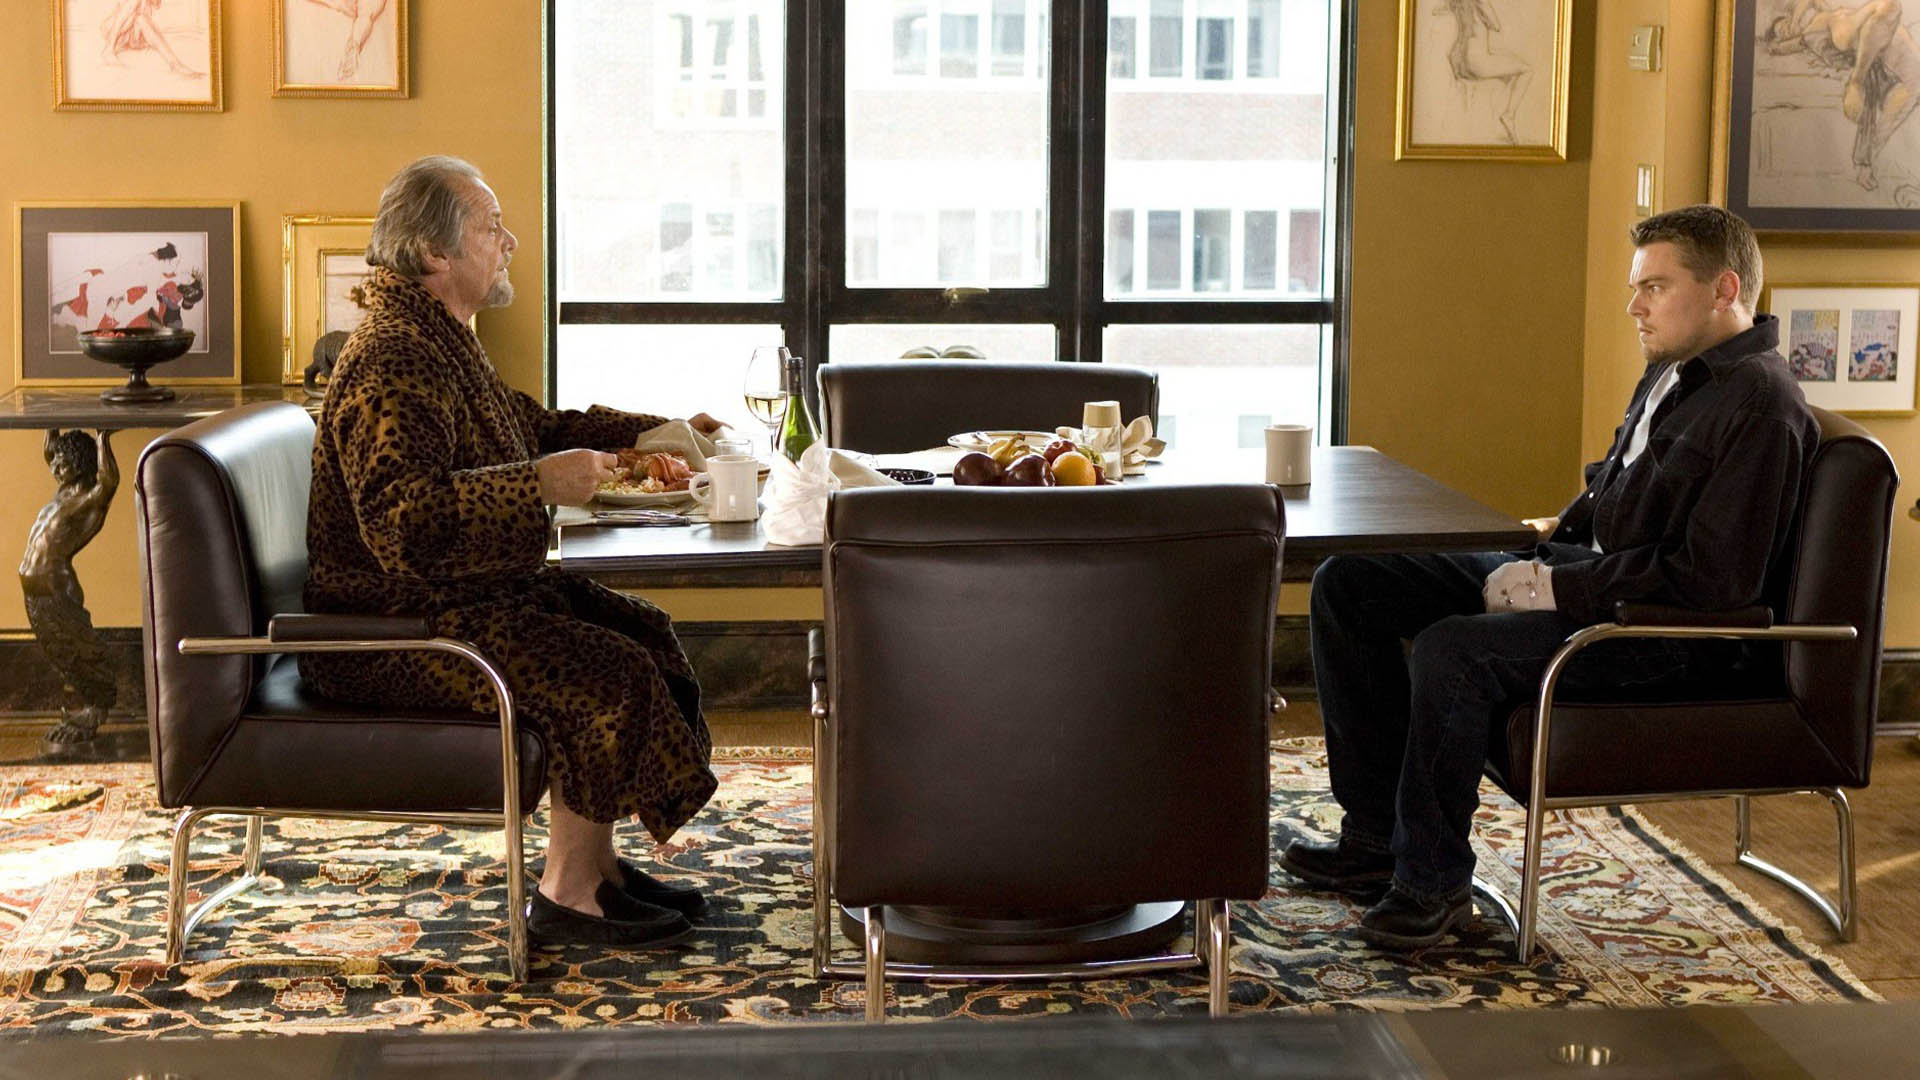 فرانک کاستلو درحال صحبت کردن با شخصیت بیلی در فیلم The Departed